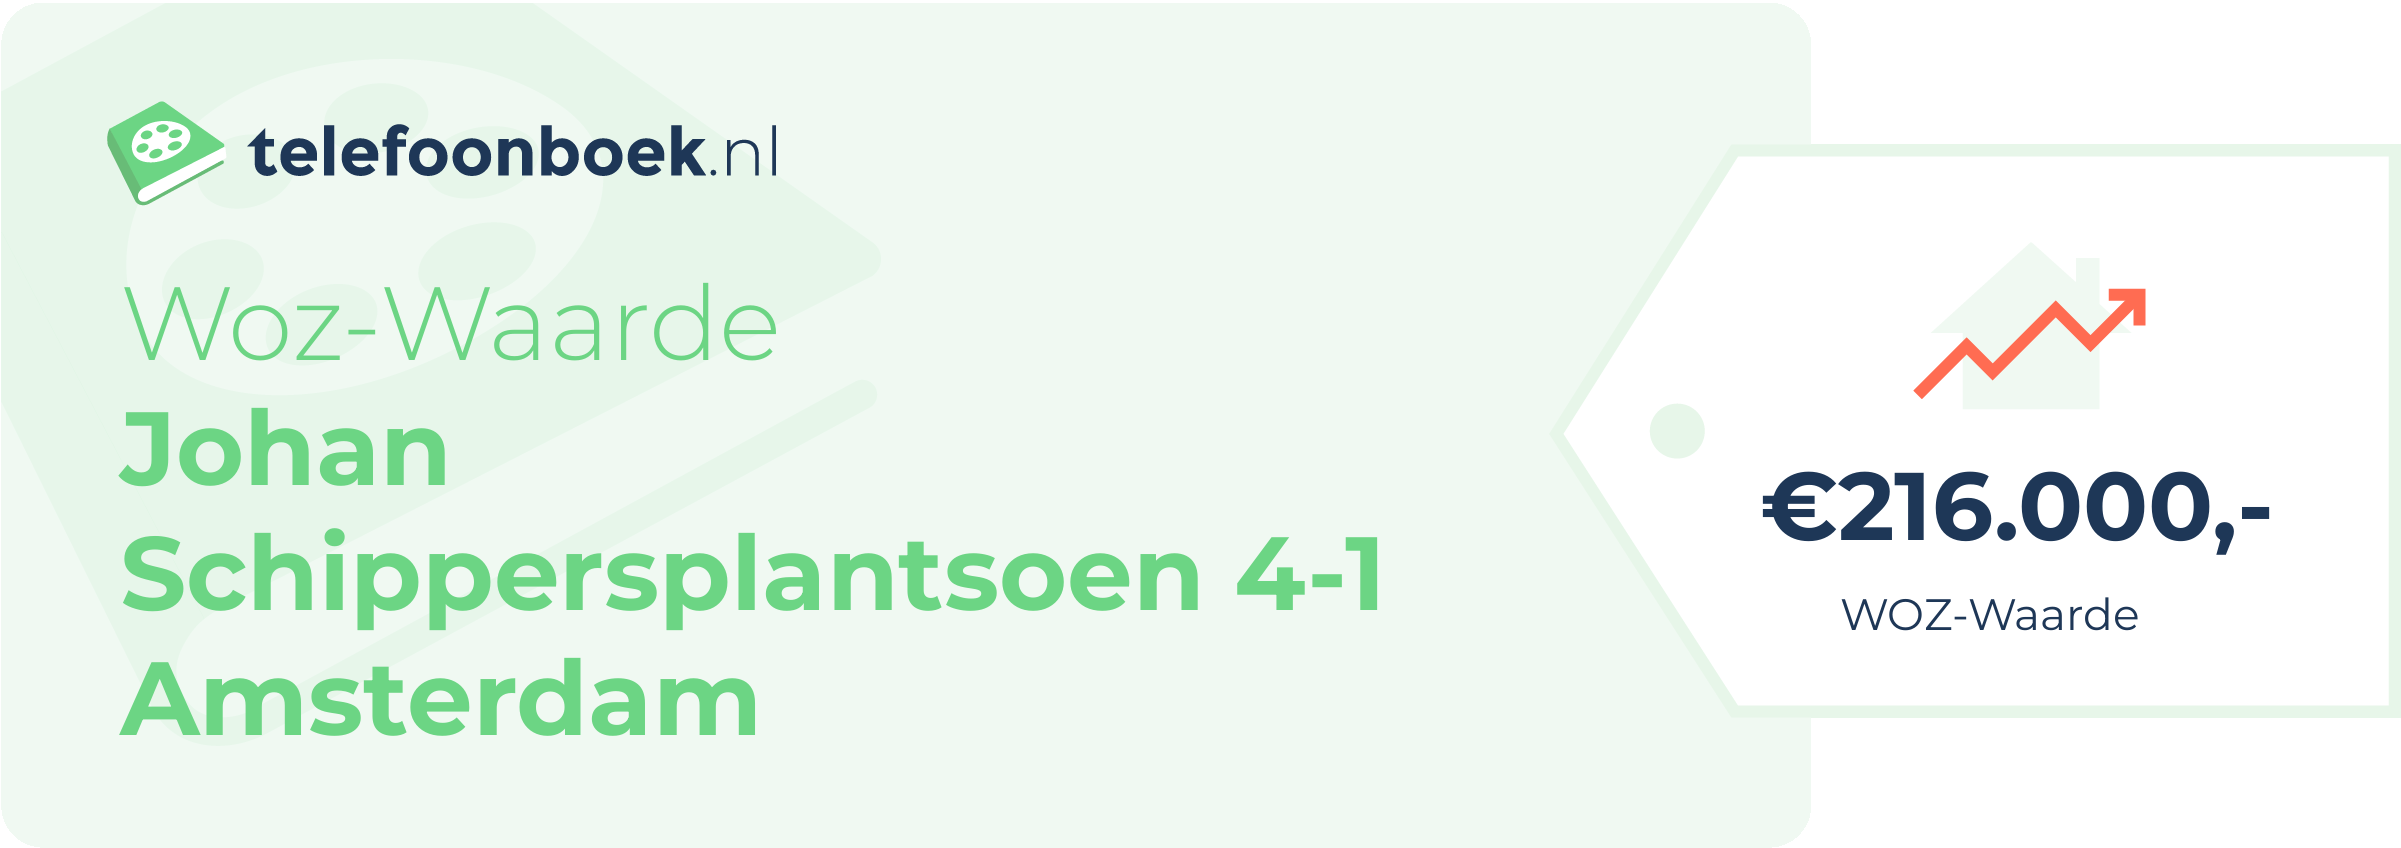 WOZ-waarde Johan Schippersplantsoen 4-1 Amsterdam